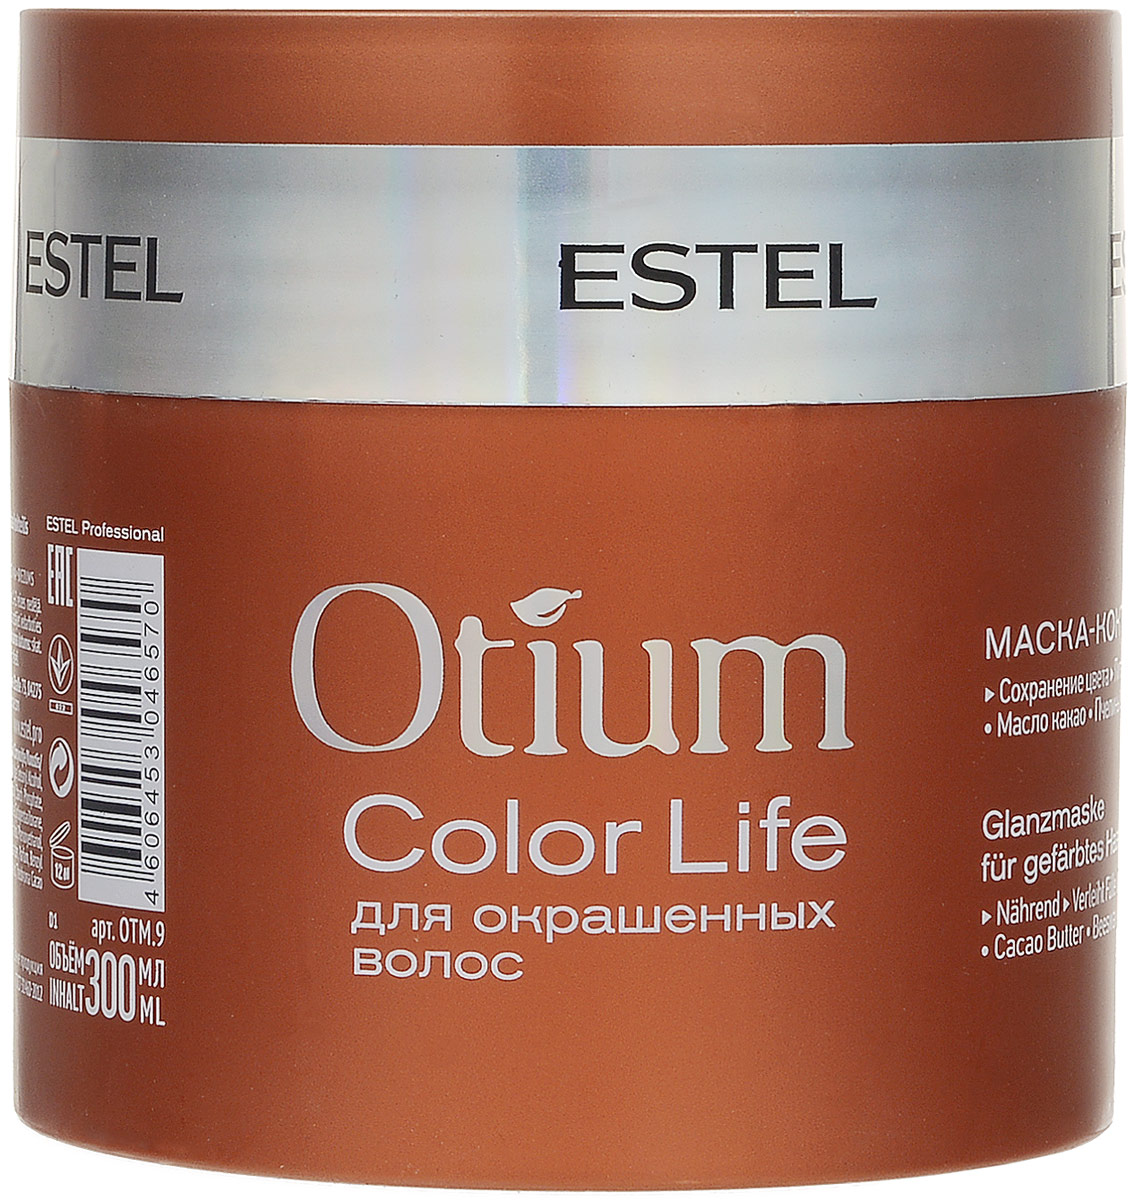 Estel Otium Color Life Маска-коктейль для окрашеных волос, 300 мл